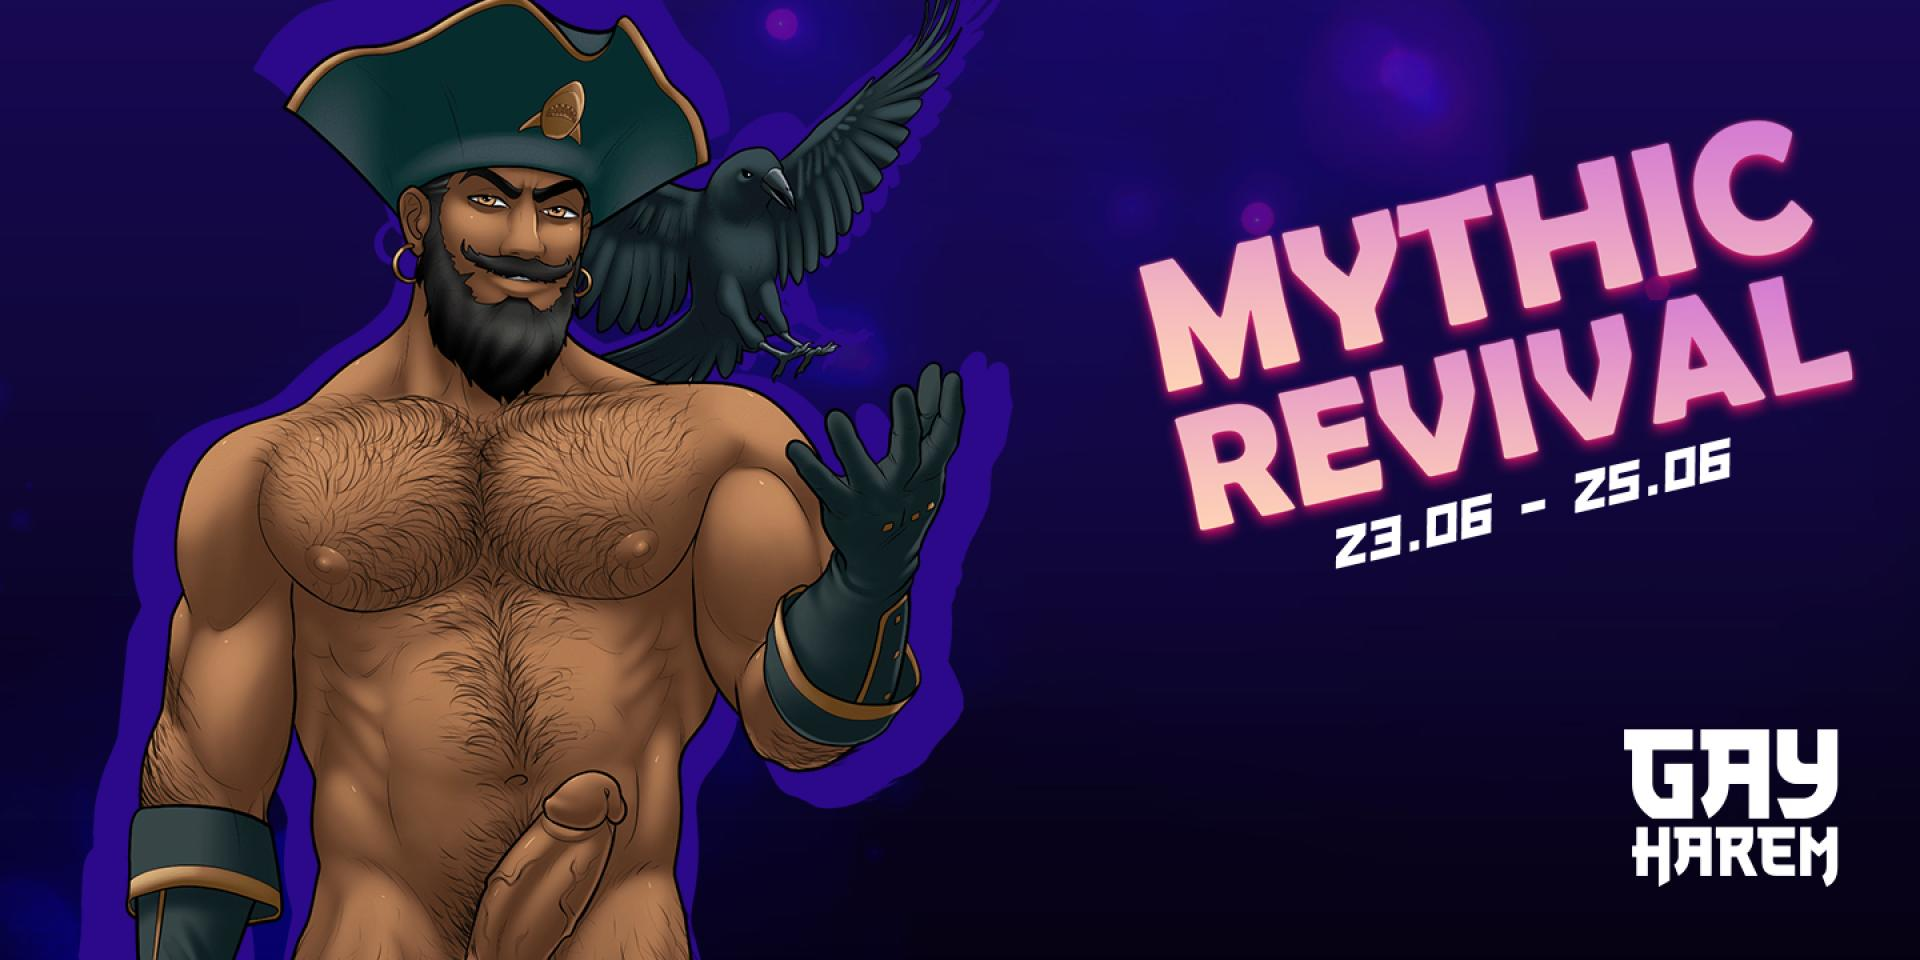 Gay Harem – Event: Mythic Days Revival #8 (23 June 2022 → 25 June 2022)